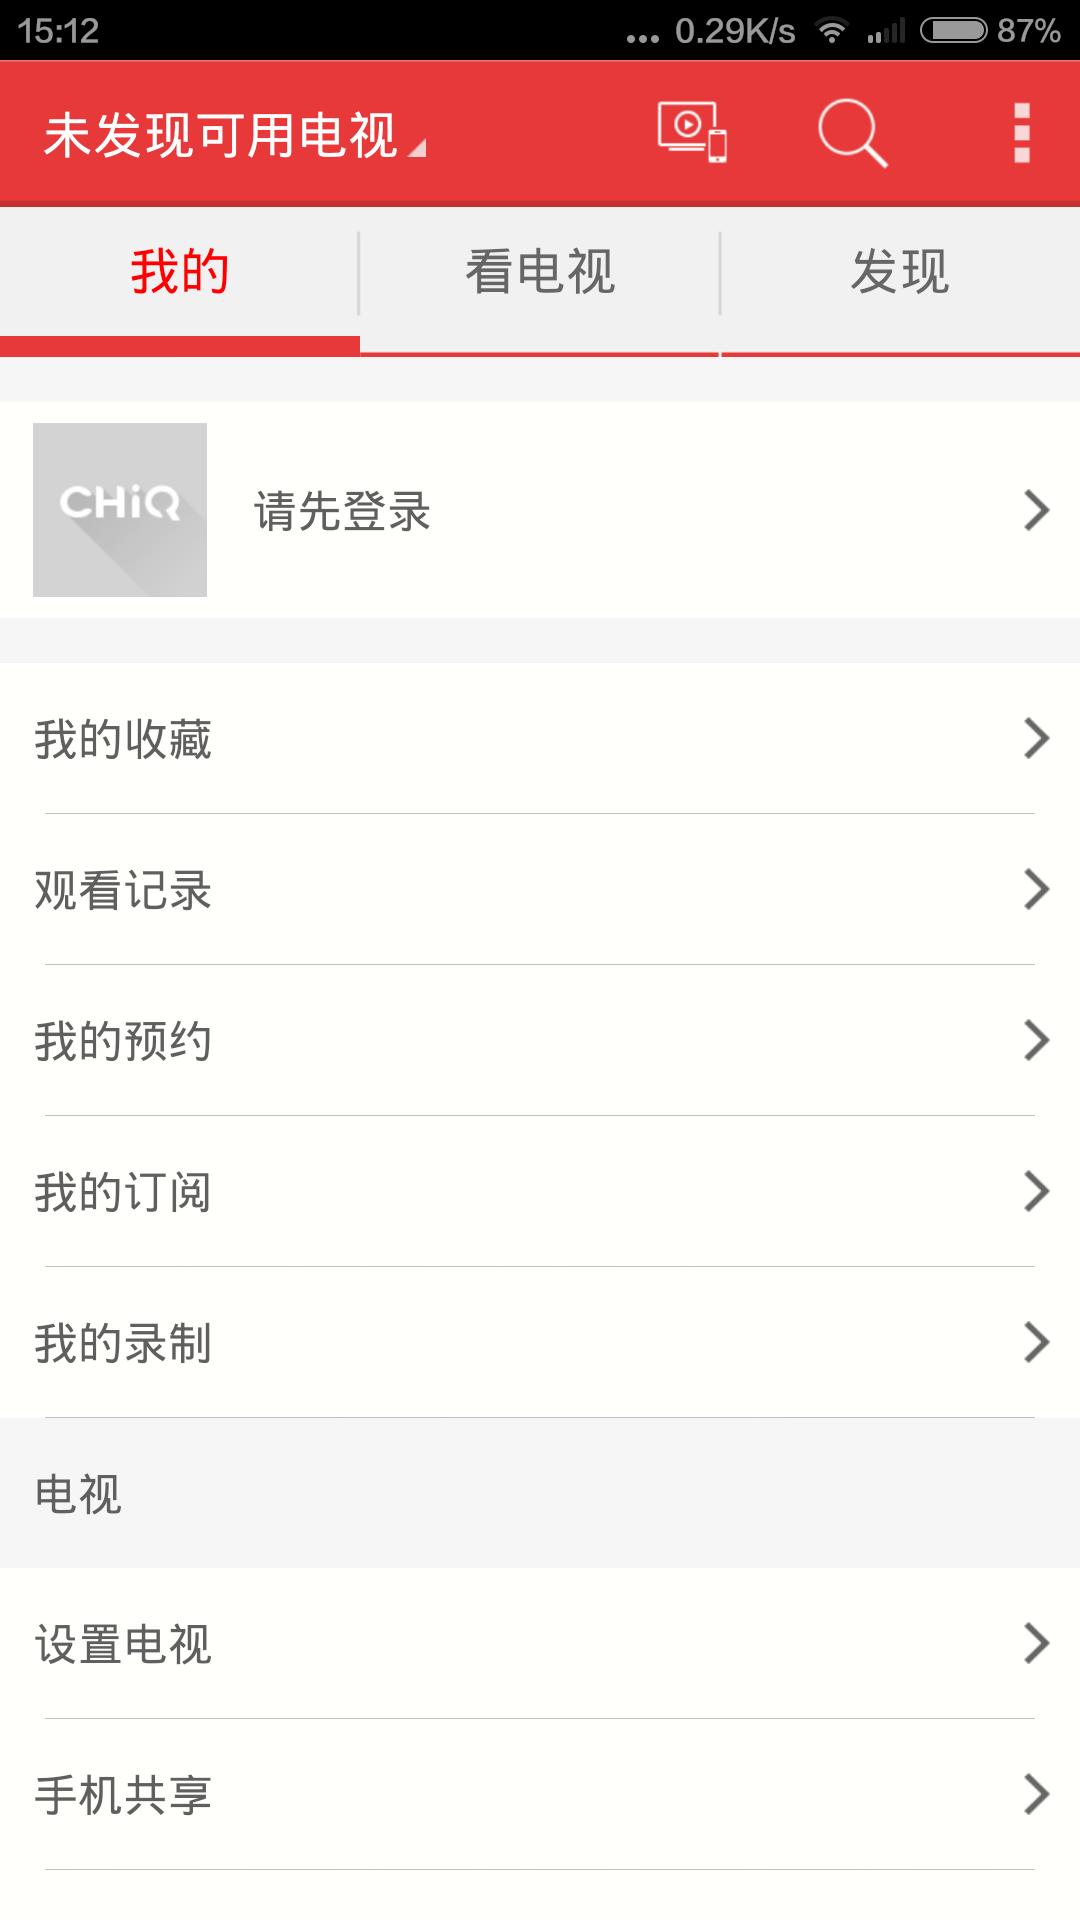 chiq电视手机遥控苹果版 v3.1.22 官方iphone版1